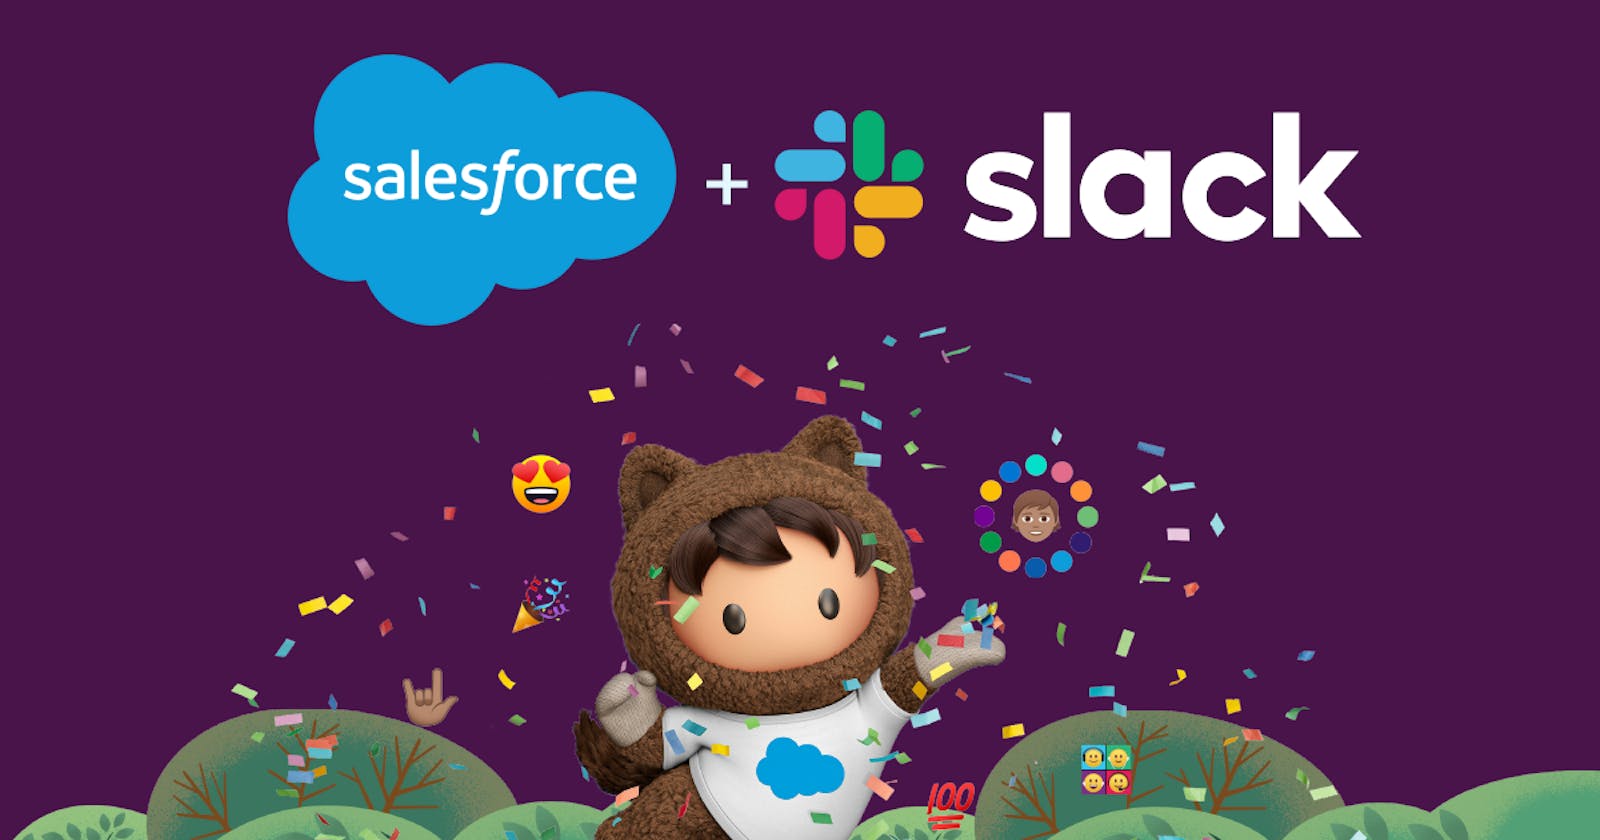 When Salesforce meets Slack - 2